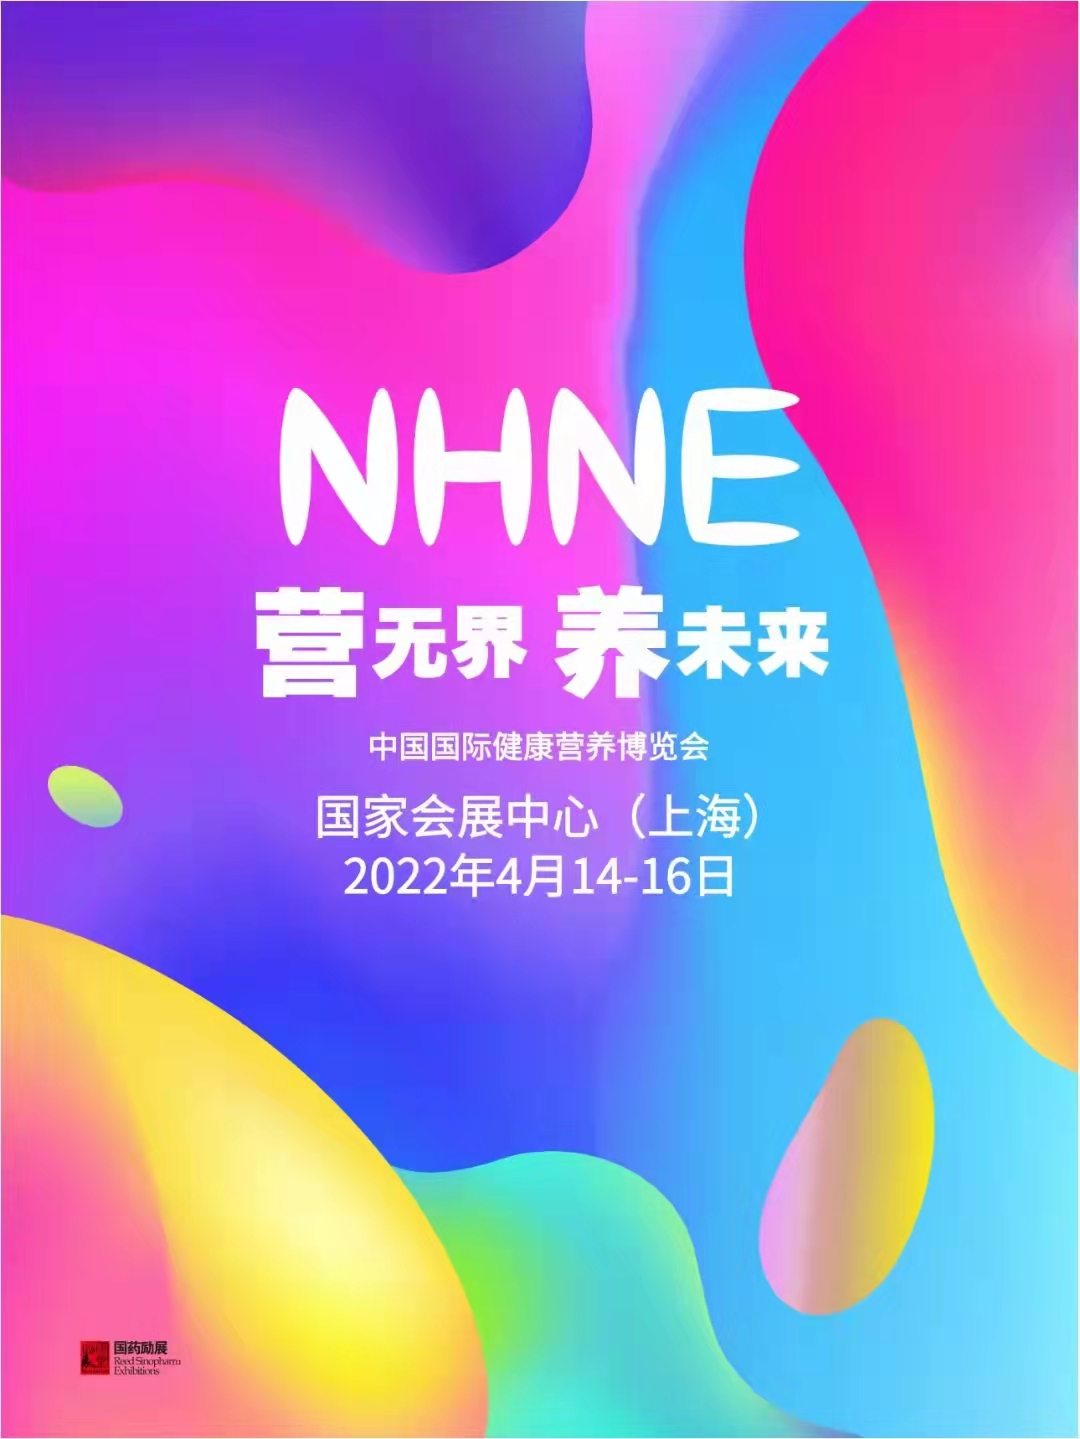 2022国际健康营养博览会（NHNE）&上海全国药交会(www.828i.com)